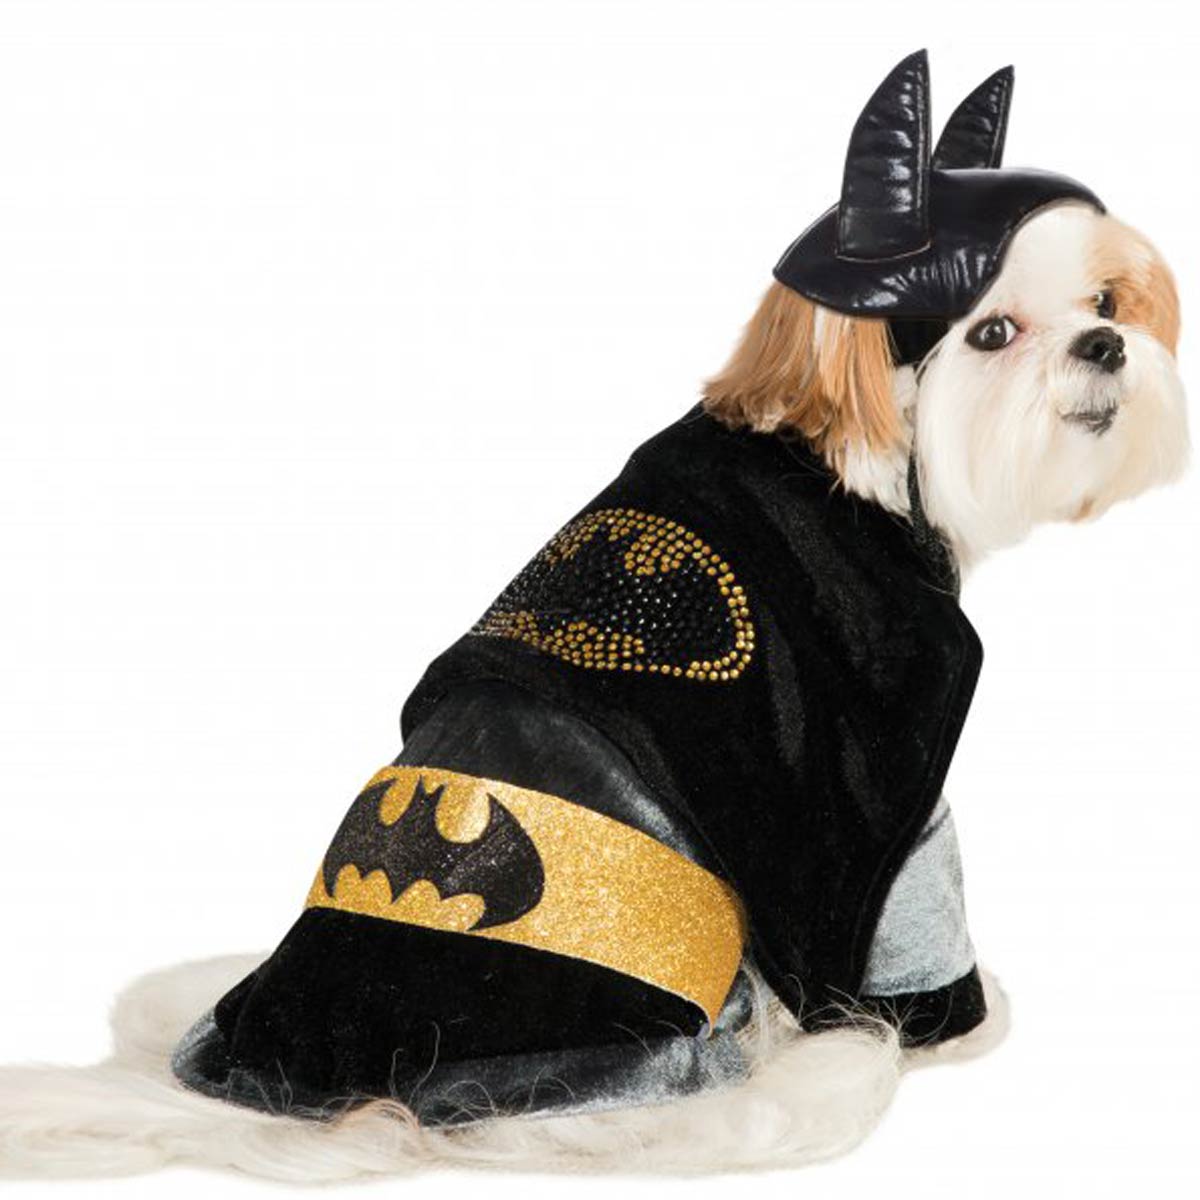 Cuddly Batman Dog Costume with Rhinestone Logo